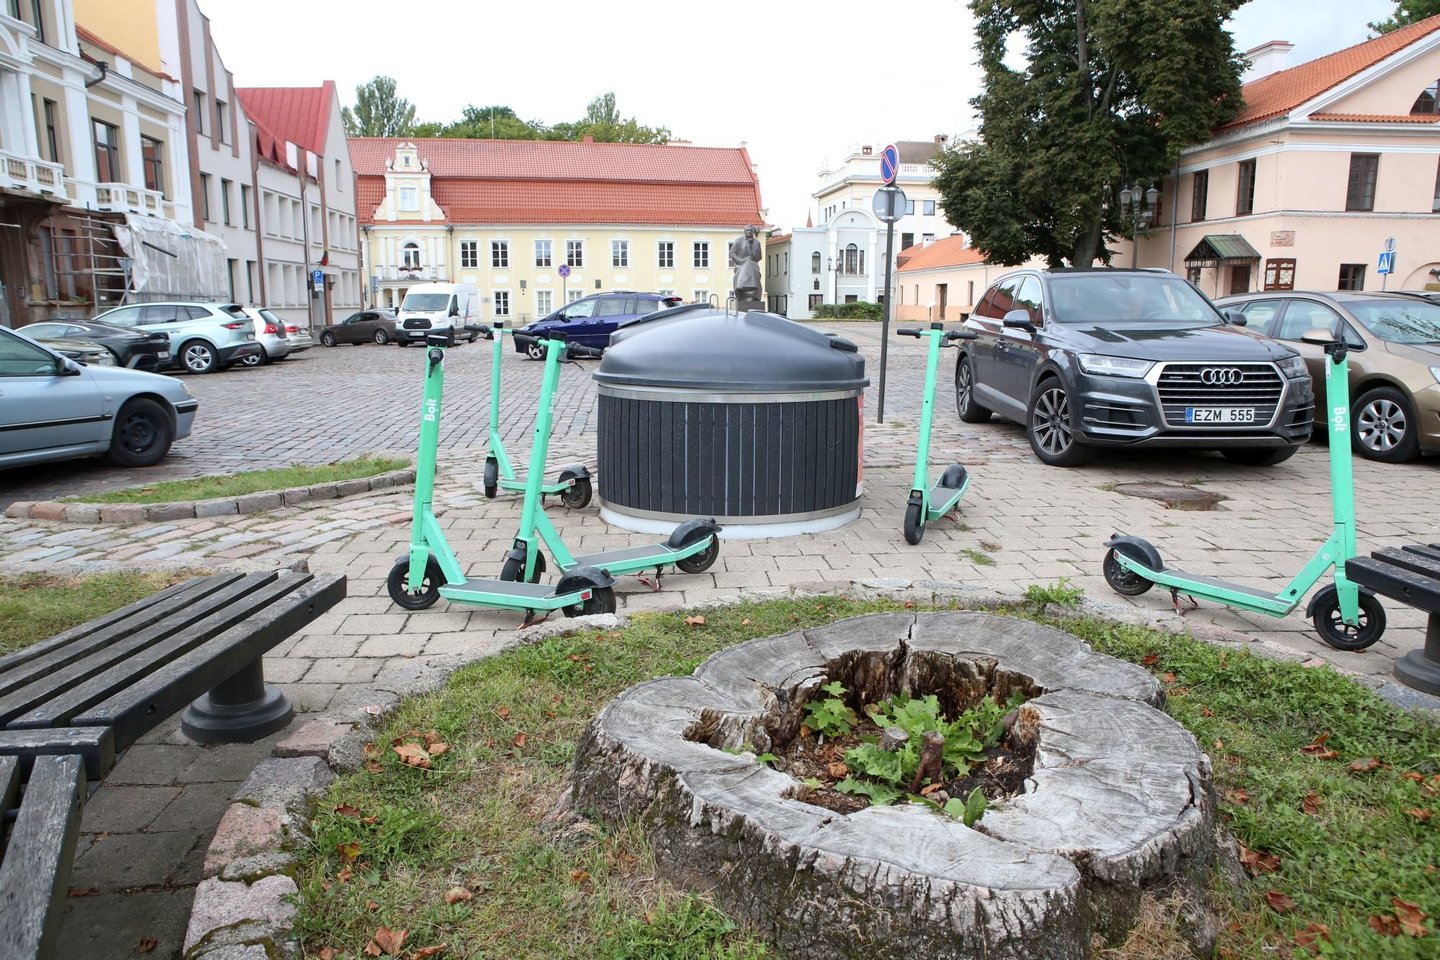 Gyventi mieste be nuosavo automobilio – utopija ar jau misija-įmanoma Lietuvoje?<br>M.Patašiaus nuotr.